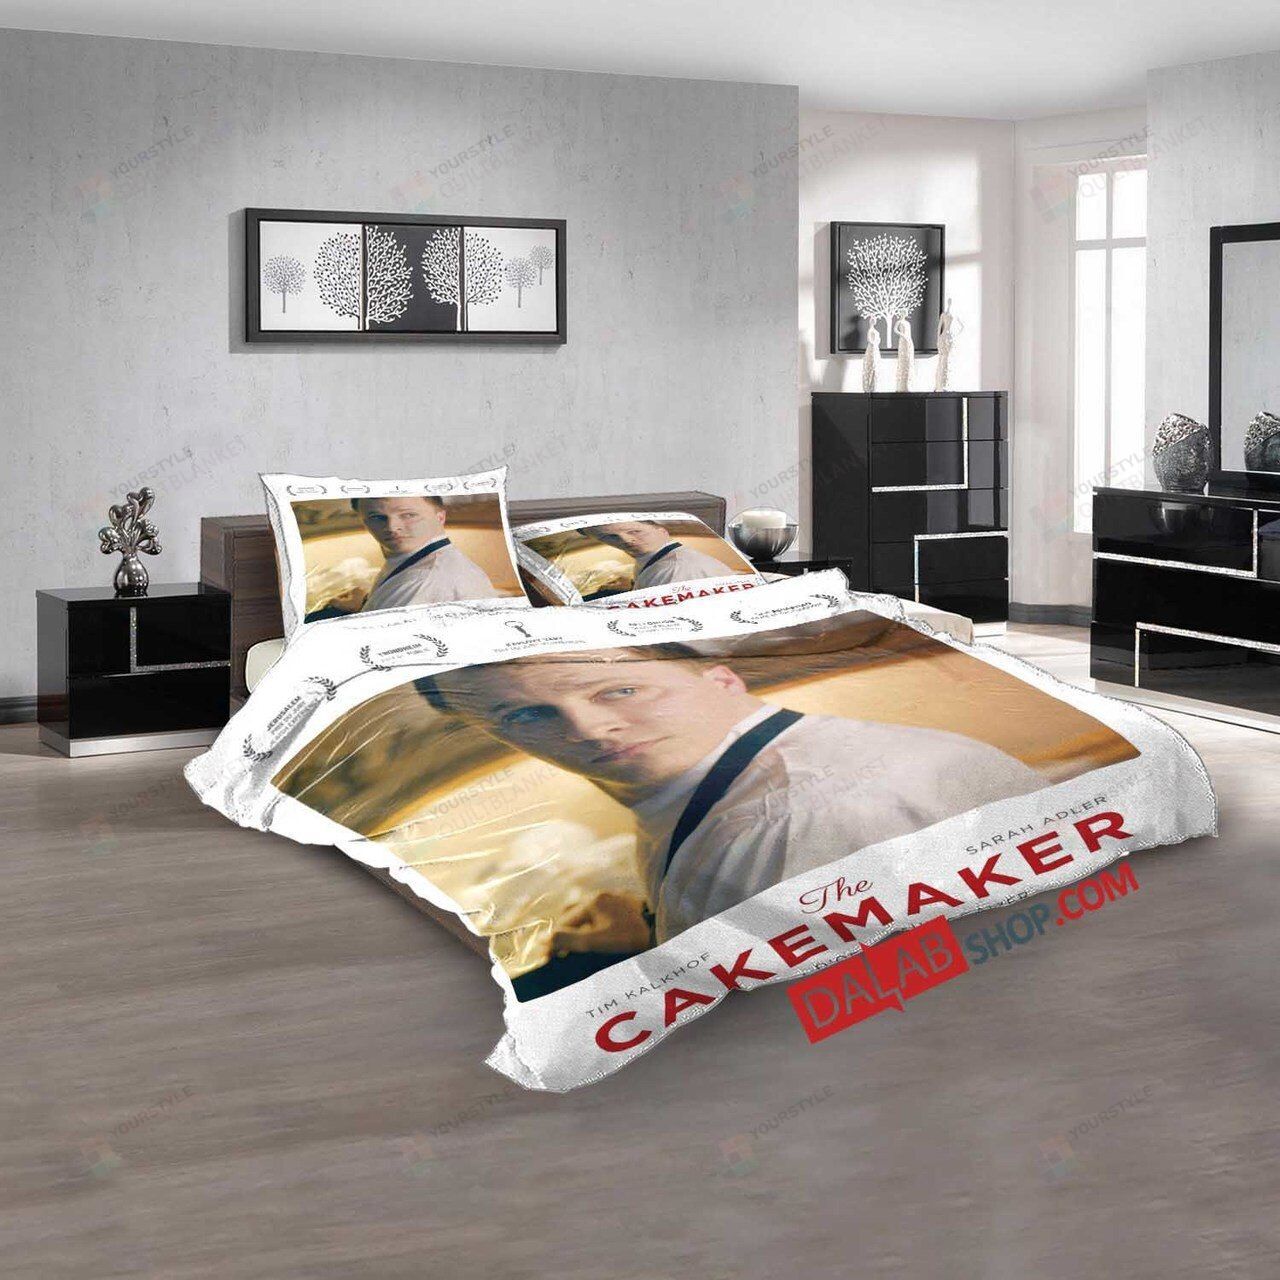 Netflix Movie The Cakemaker D 3d Duvet Cover Bedroom Sets Bedding Sets